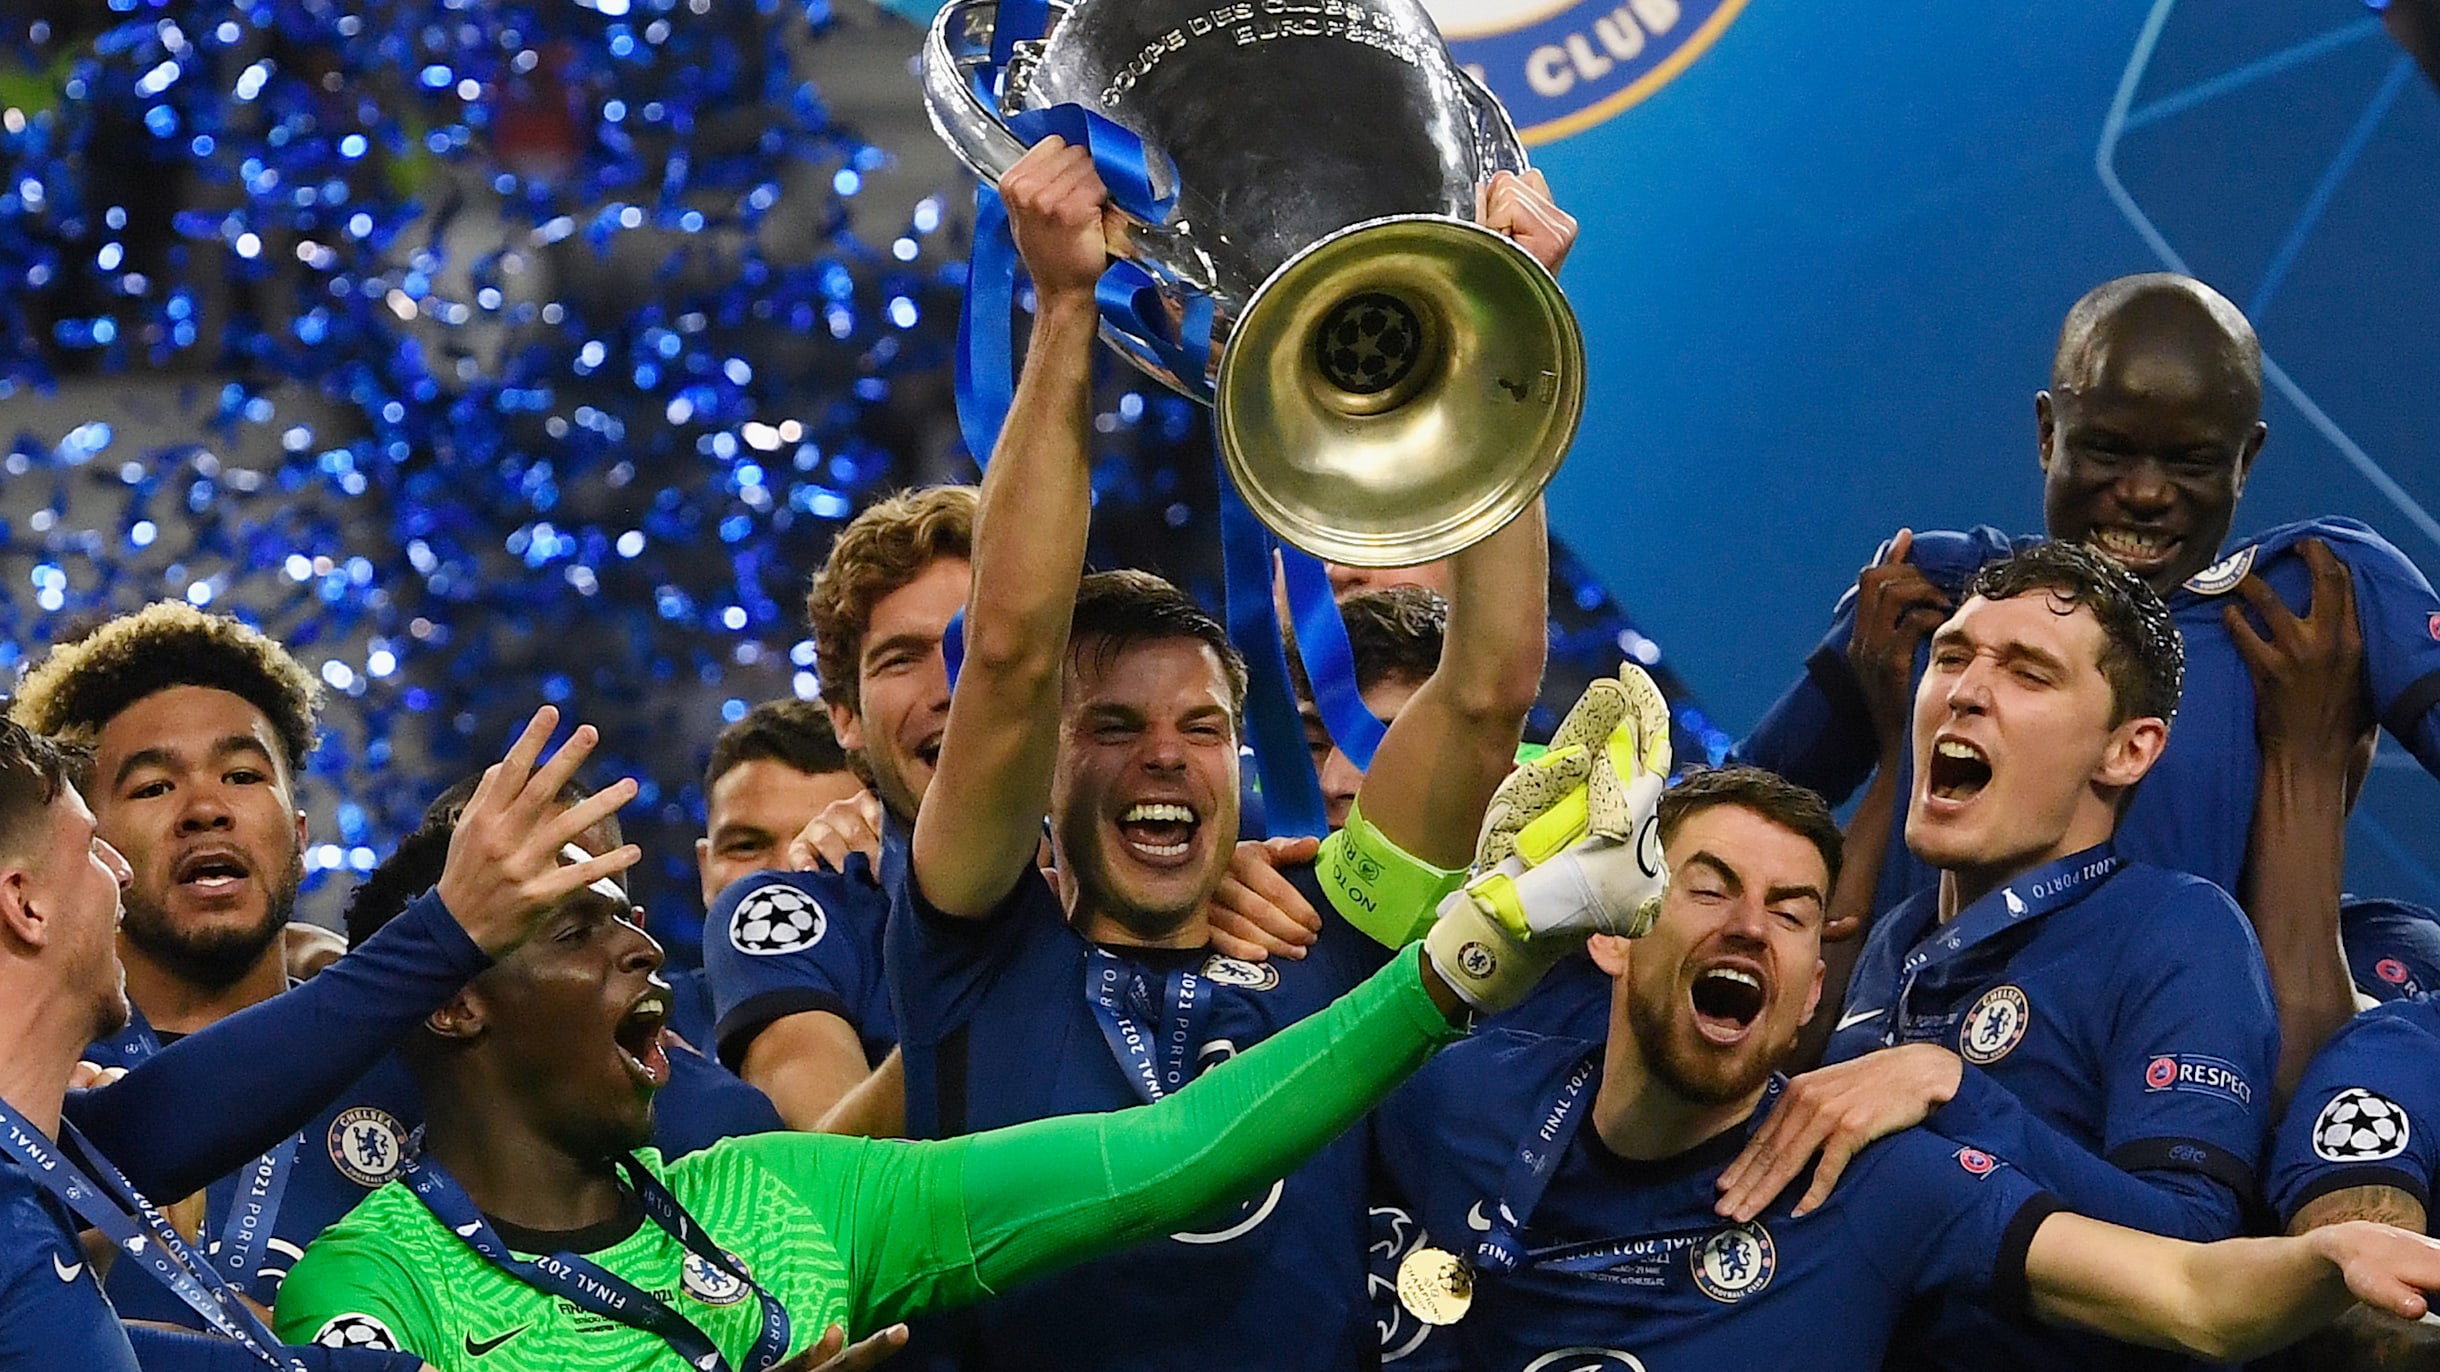 Chelsea win Champions League as Havertz goal tames City